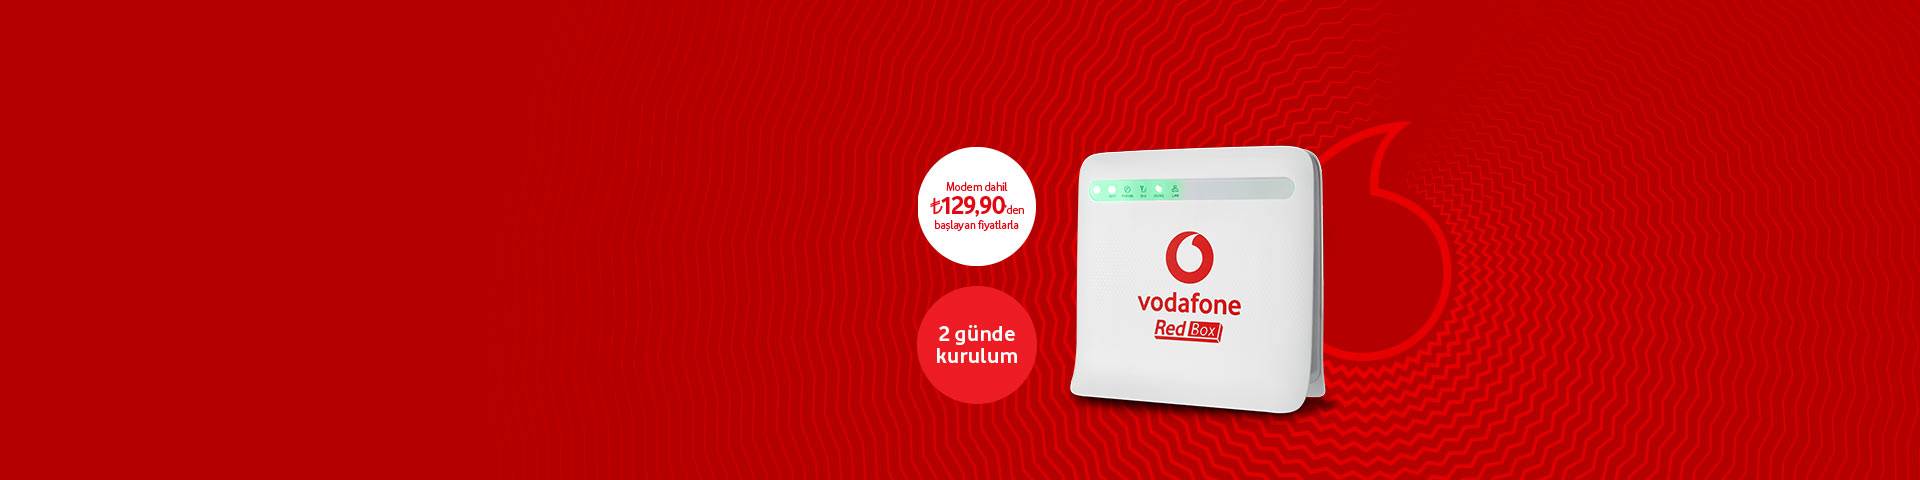 Vodafone Evde Redbox Tarifeleri